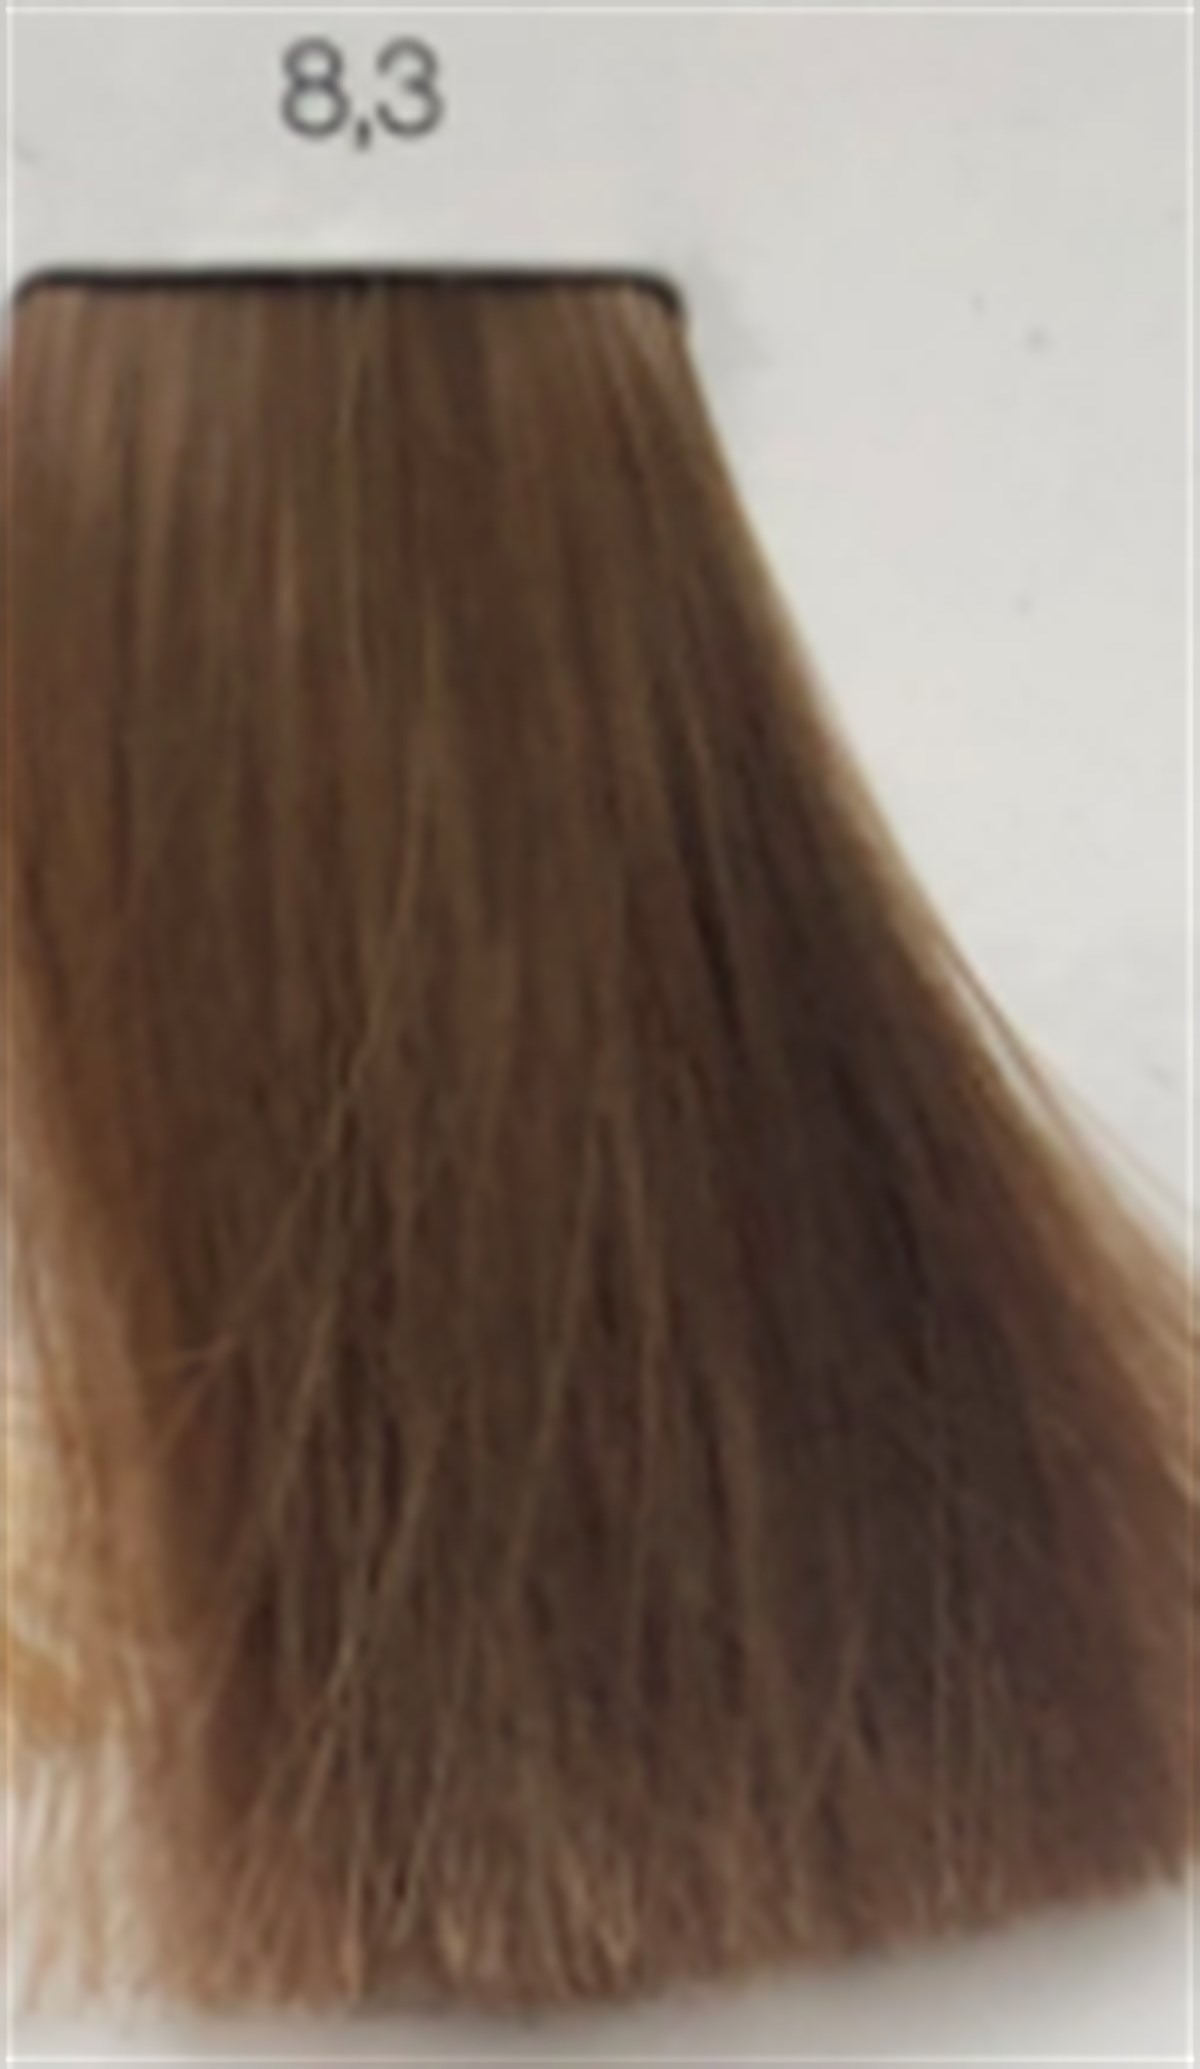 inoa saç boyası 8.3İNOA SAÇ BOYASI-www.arzumkozmetik.com